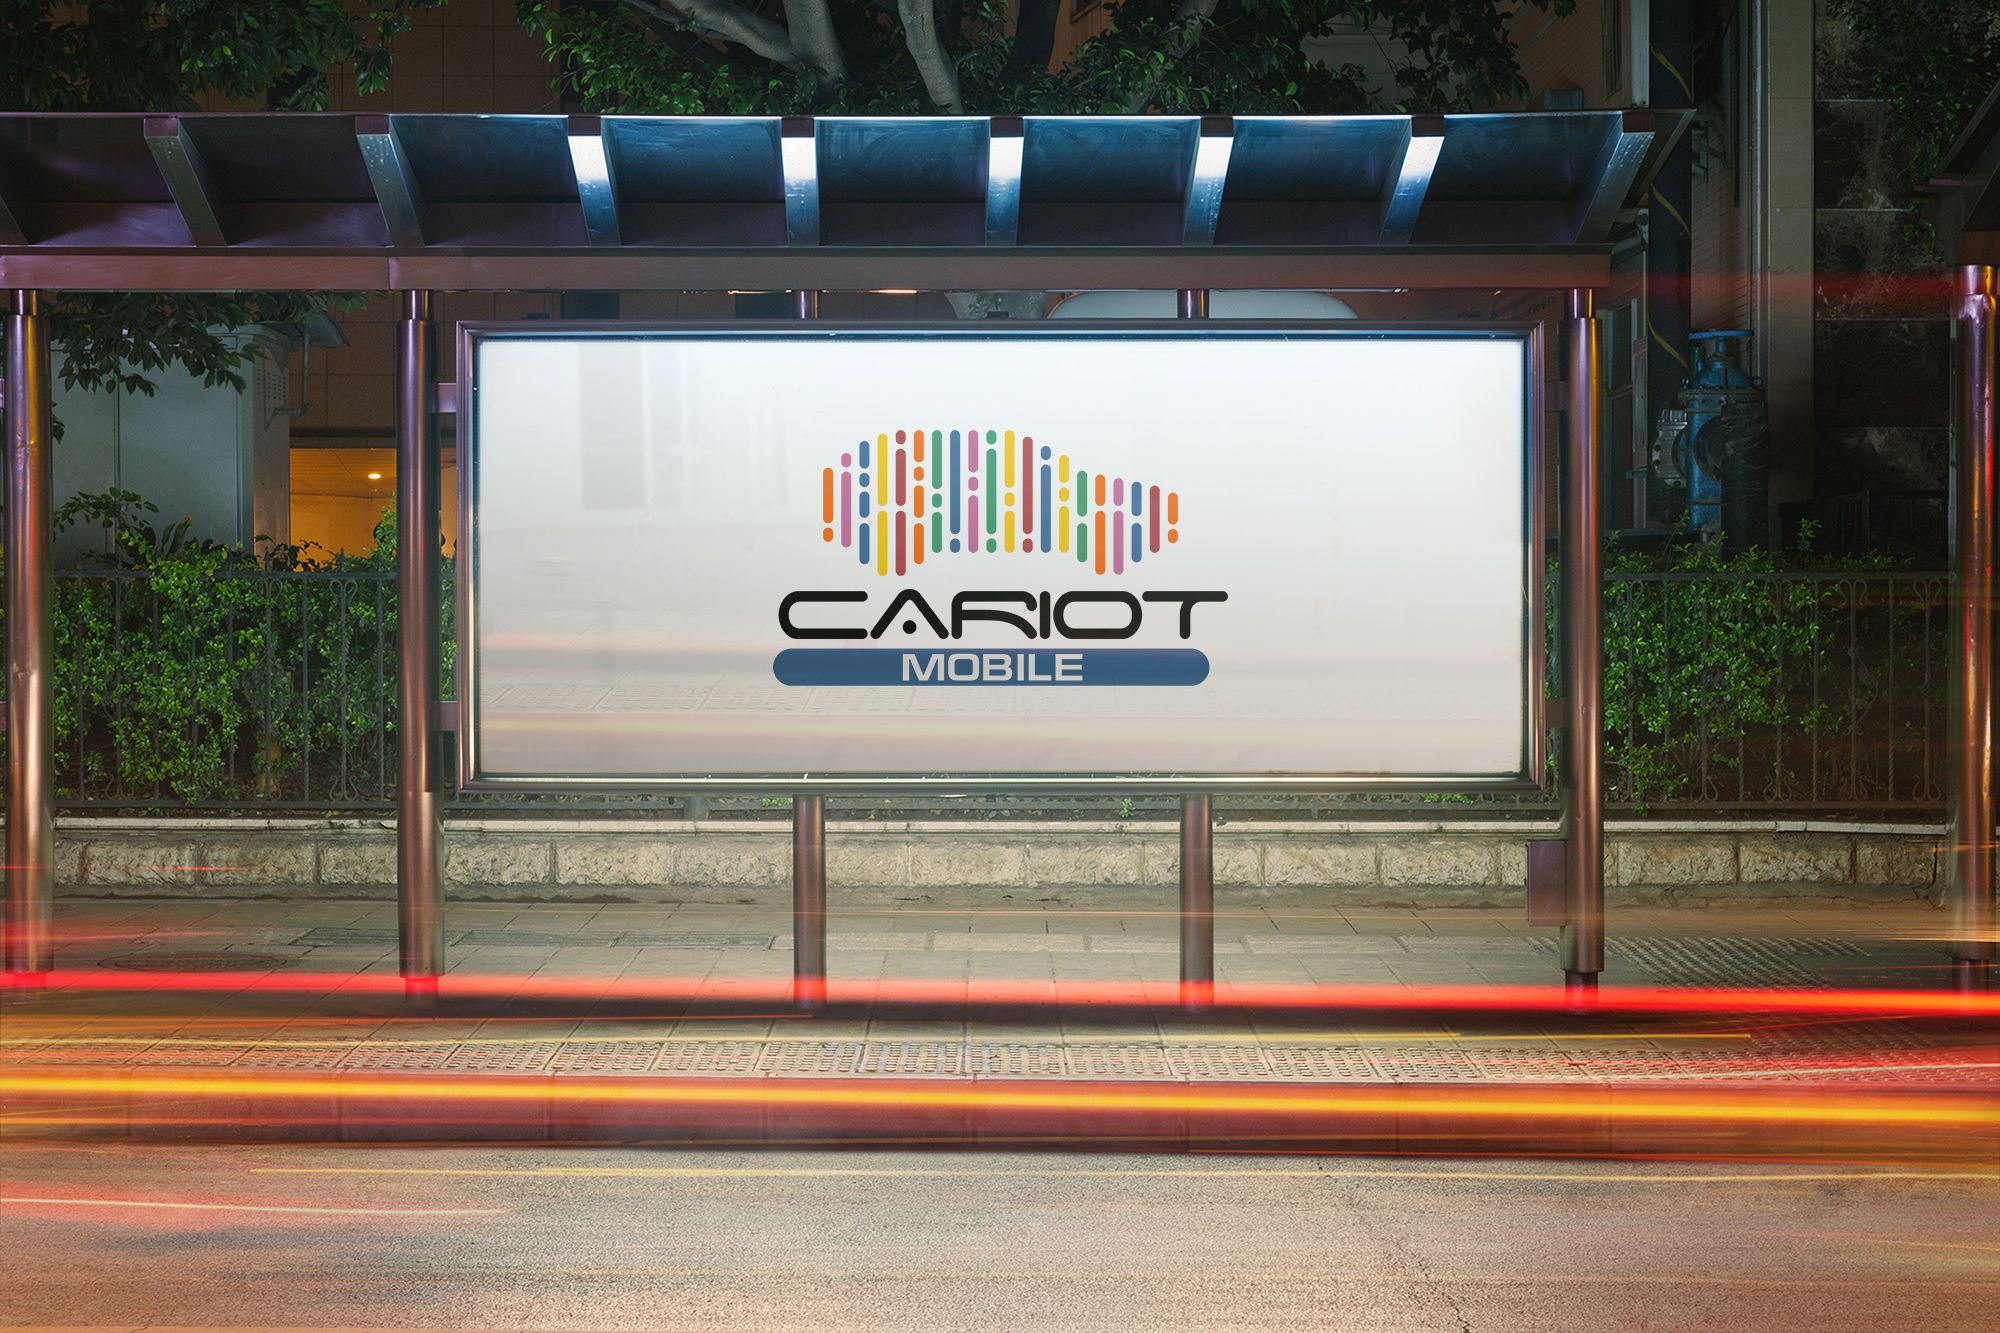 Логотип и ФС для cariot - дизайнер robert3d